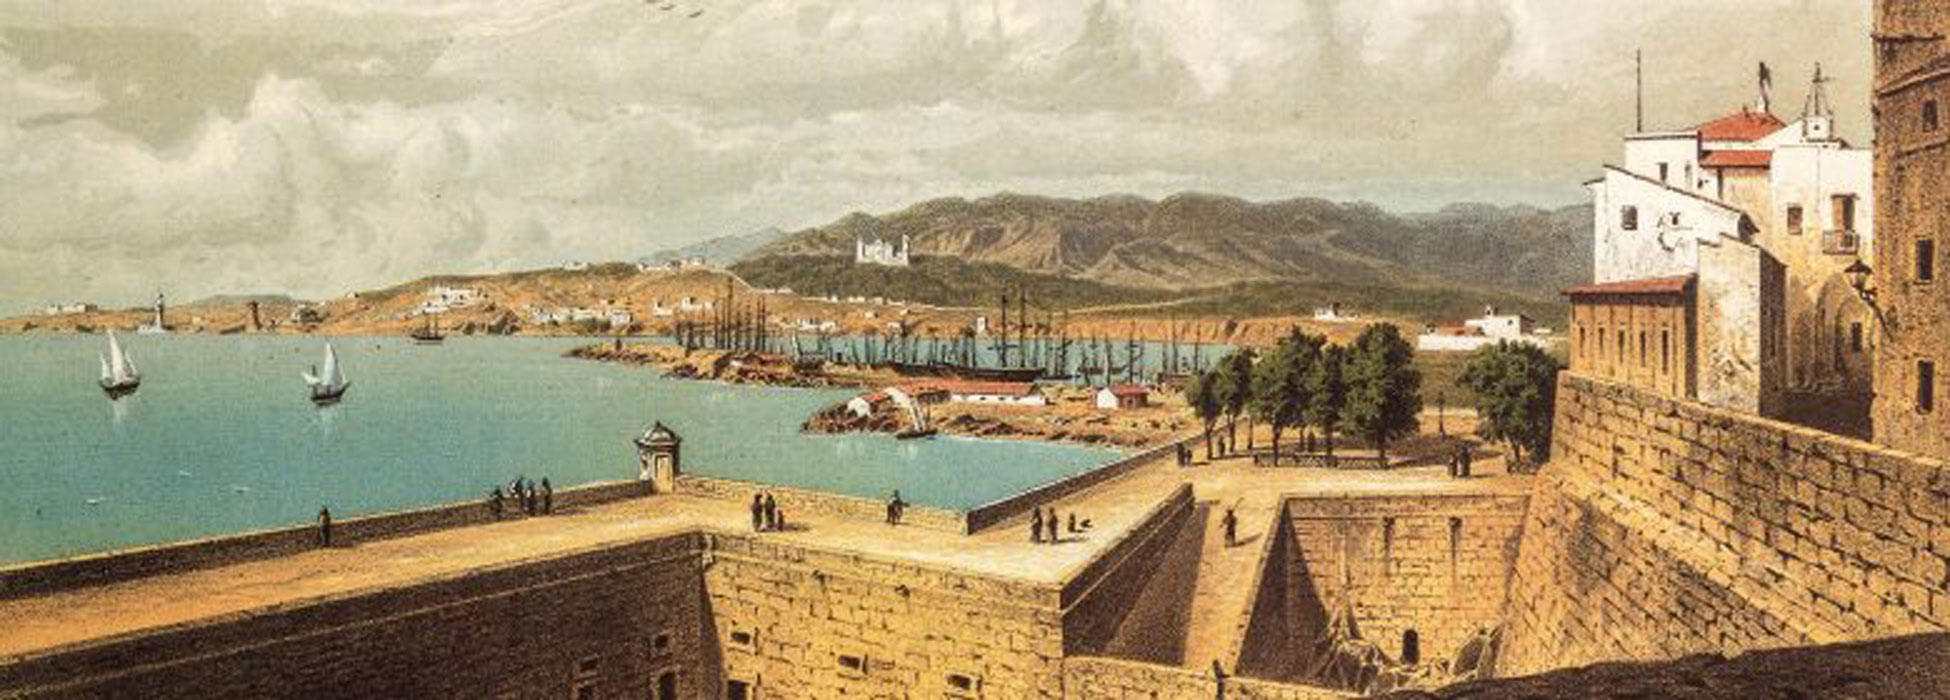 Palma vista por los viajeros del siglo XIX